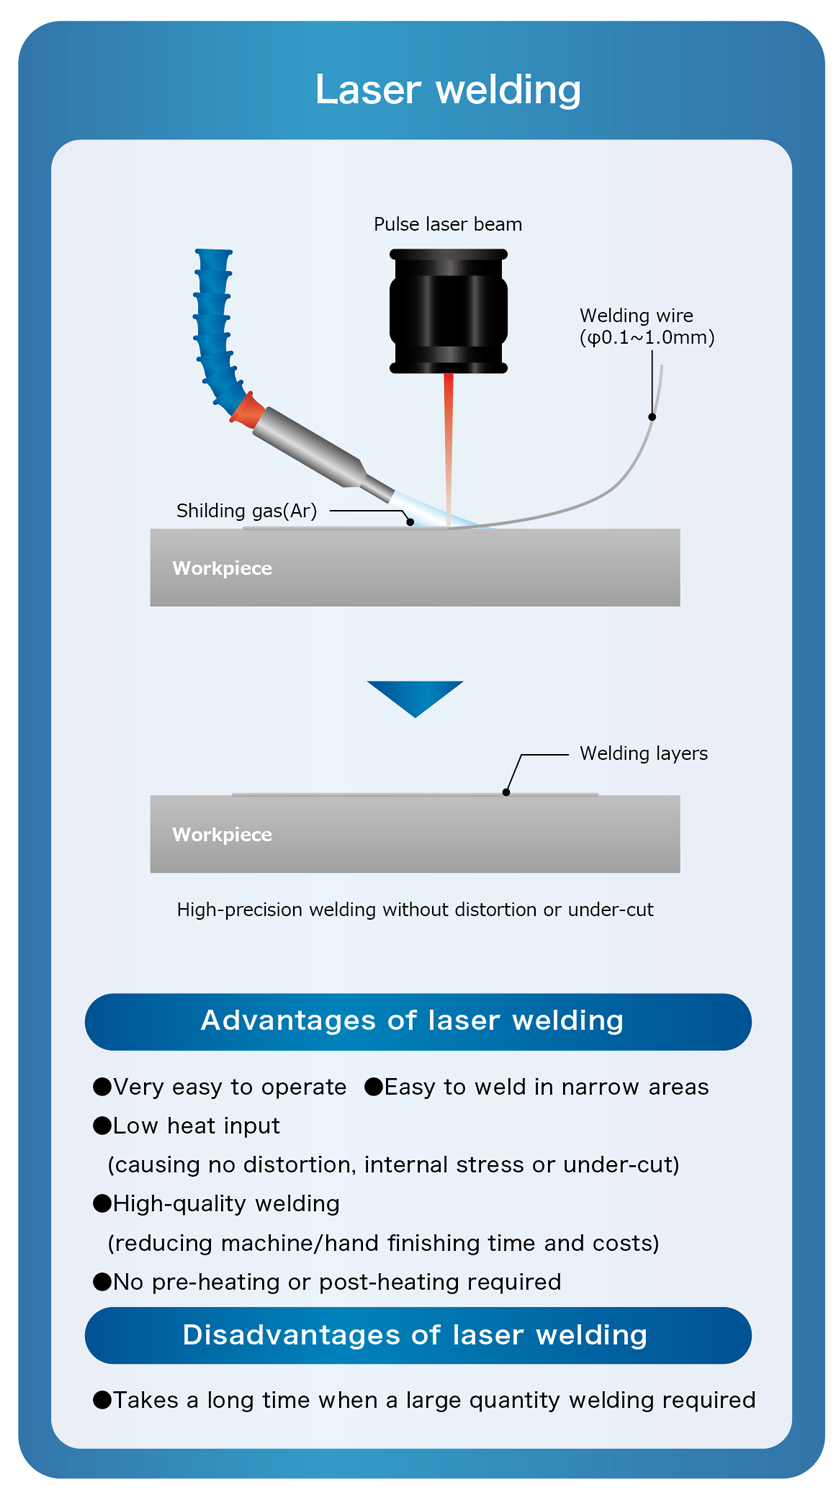 Laser welding